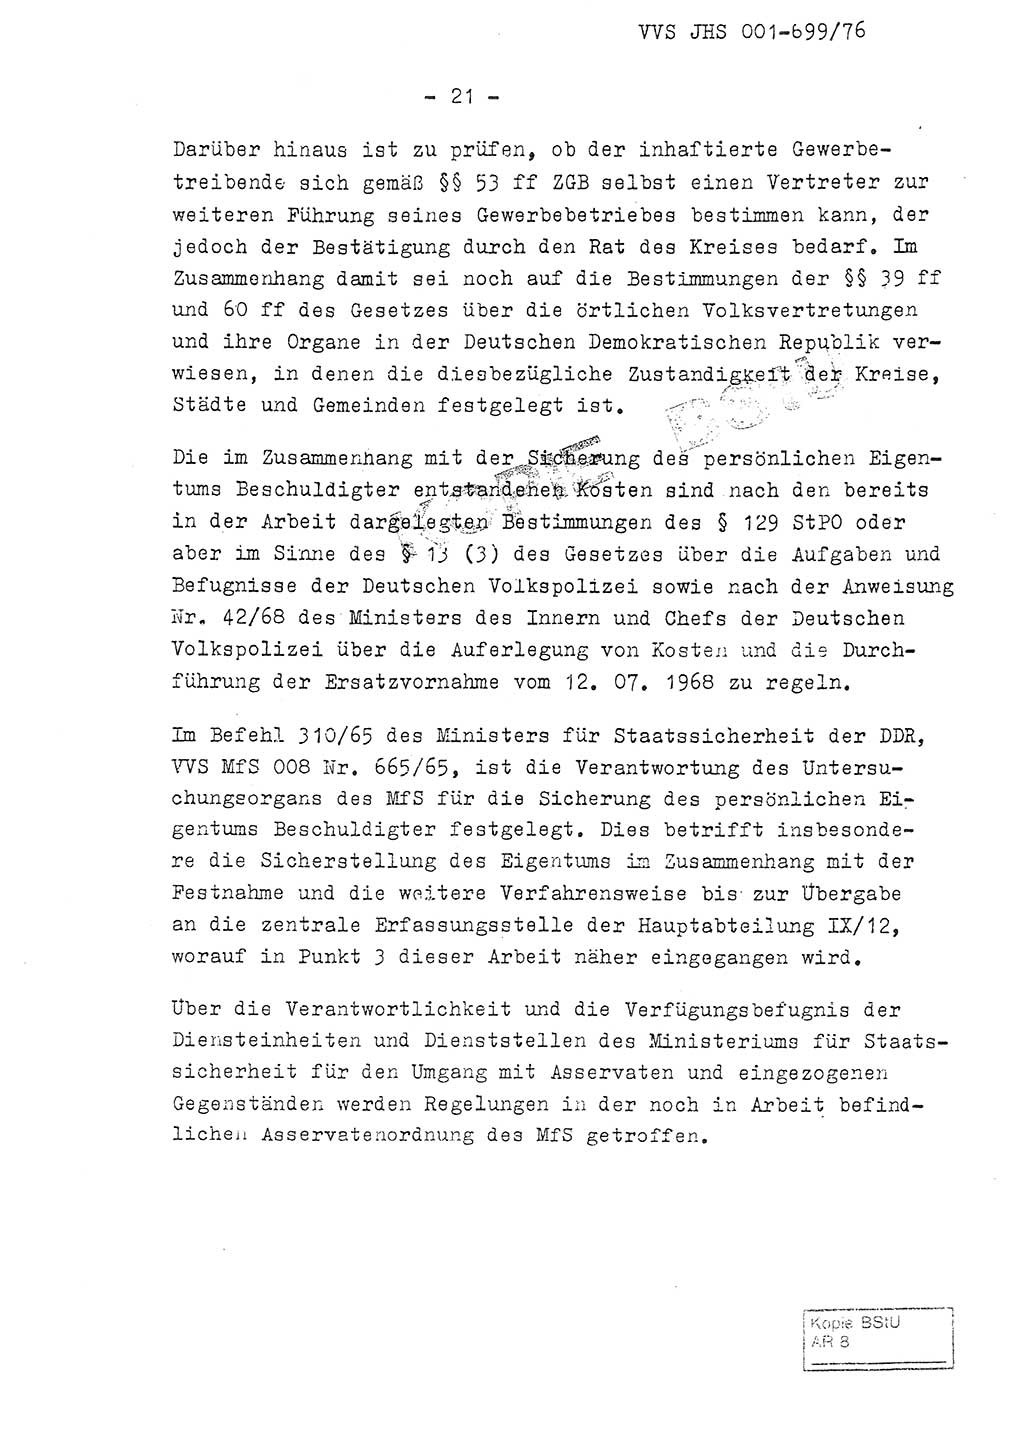 Fachschulabschlußarbeit Leutnant Volkmar Taubert (HA Ⅸ/9), Leutnant Axel Naumann (HA Ⅸ/9), Unterleutnat Detlef Debski (HA Ⅸ/9), Ministerium für Staatssicherheit (MfS) [Deutsche Demokratische Republik (DDR)], Juristische Hochschule (JHS), Vertrauliche Verschlußsache (VVS) 001-699/76, Potsdam 1976, Seite 21 (FS-Abschl.-Arb. MfS DDR JHS VVS 001-699/76 1976, S. 21)